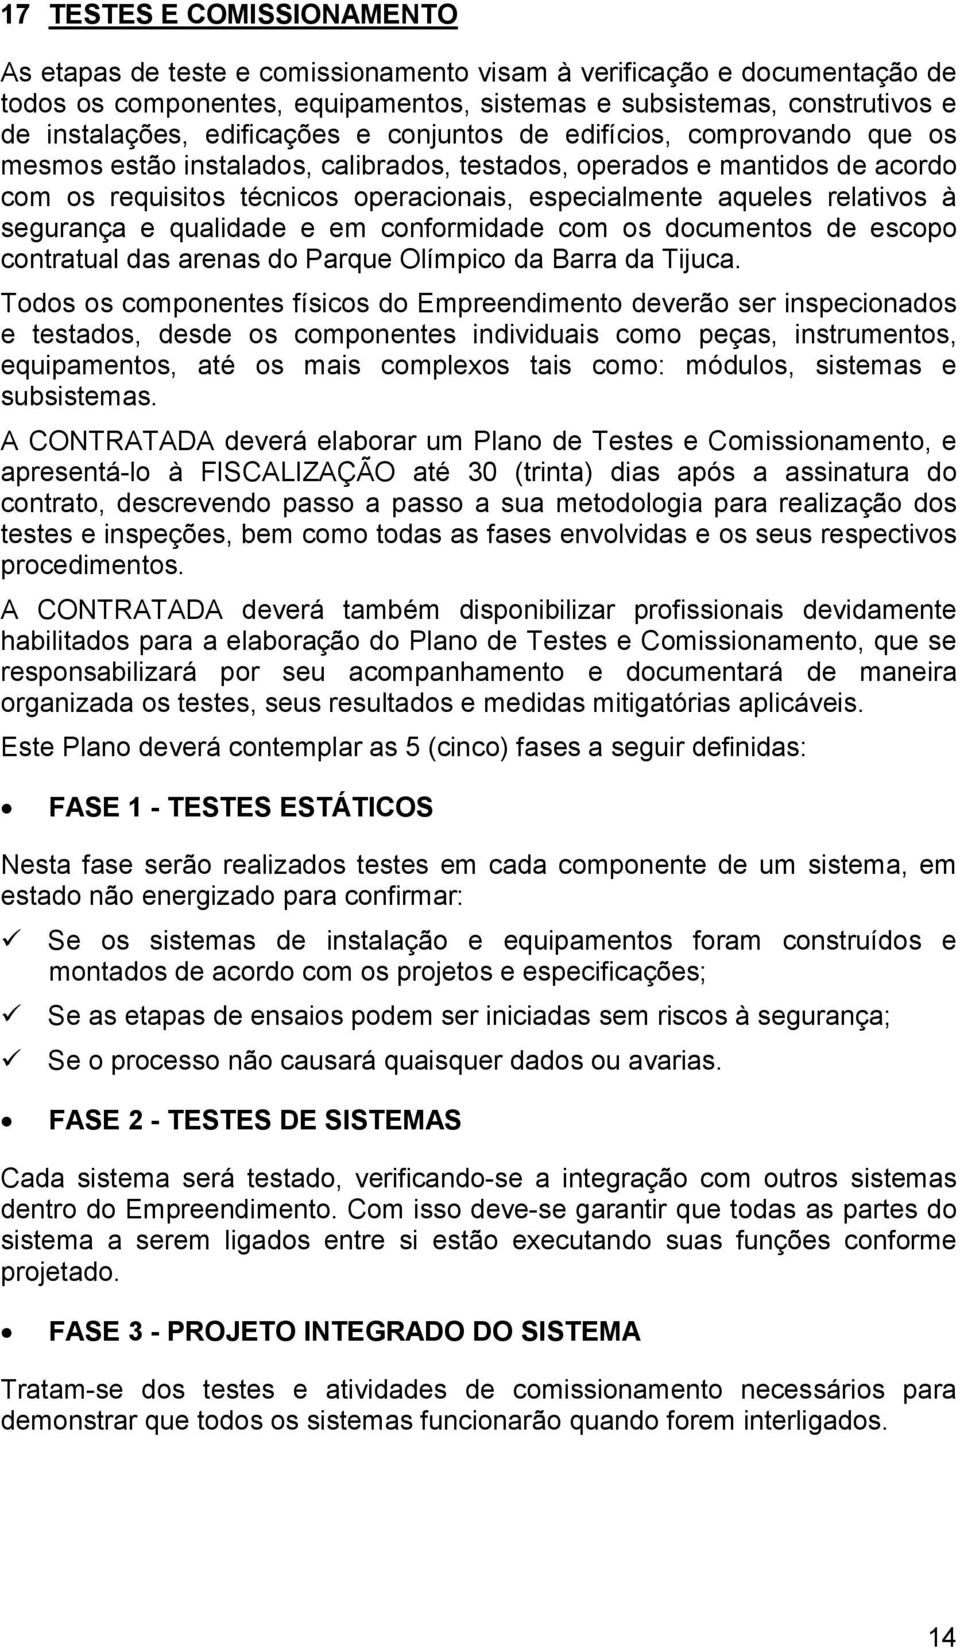 relativos à segurança e qualidade e em conformidade com os documentos de escopo contratual das arenas do Parque Olímpico da Barra da Tijuca.